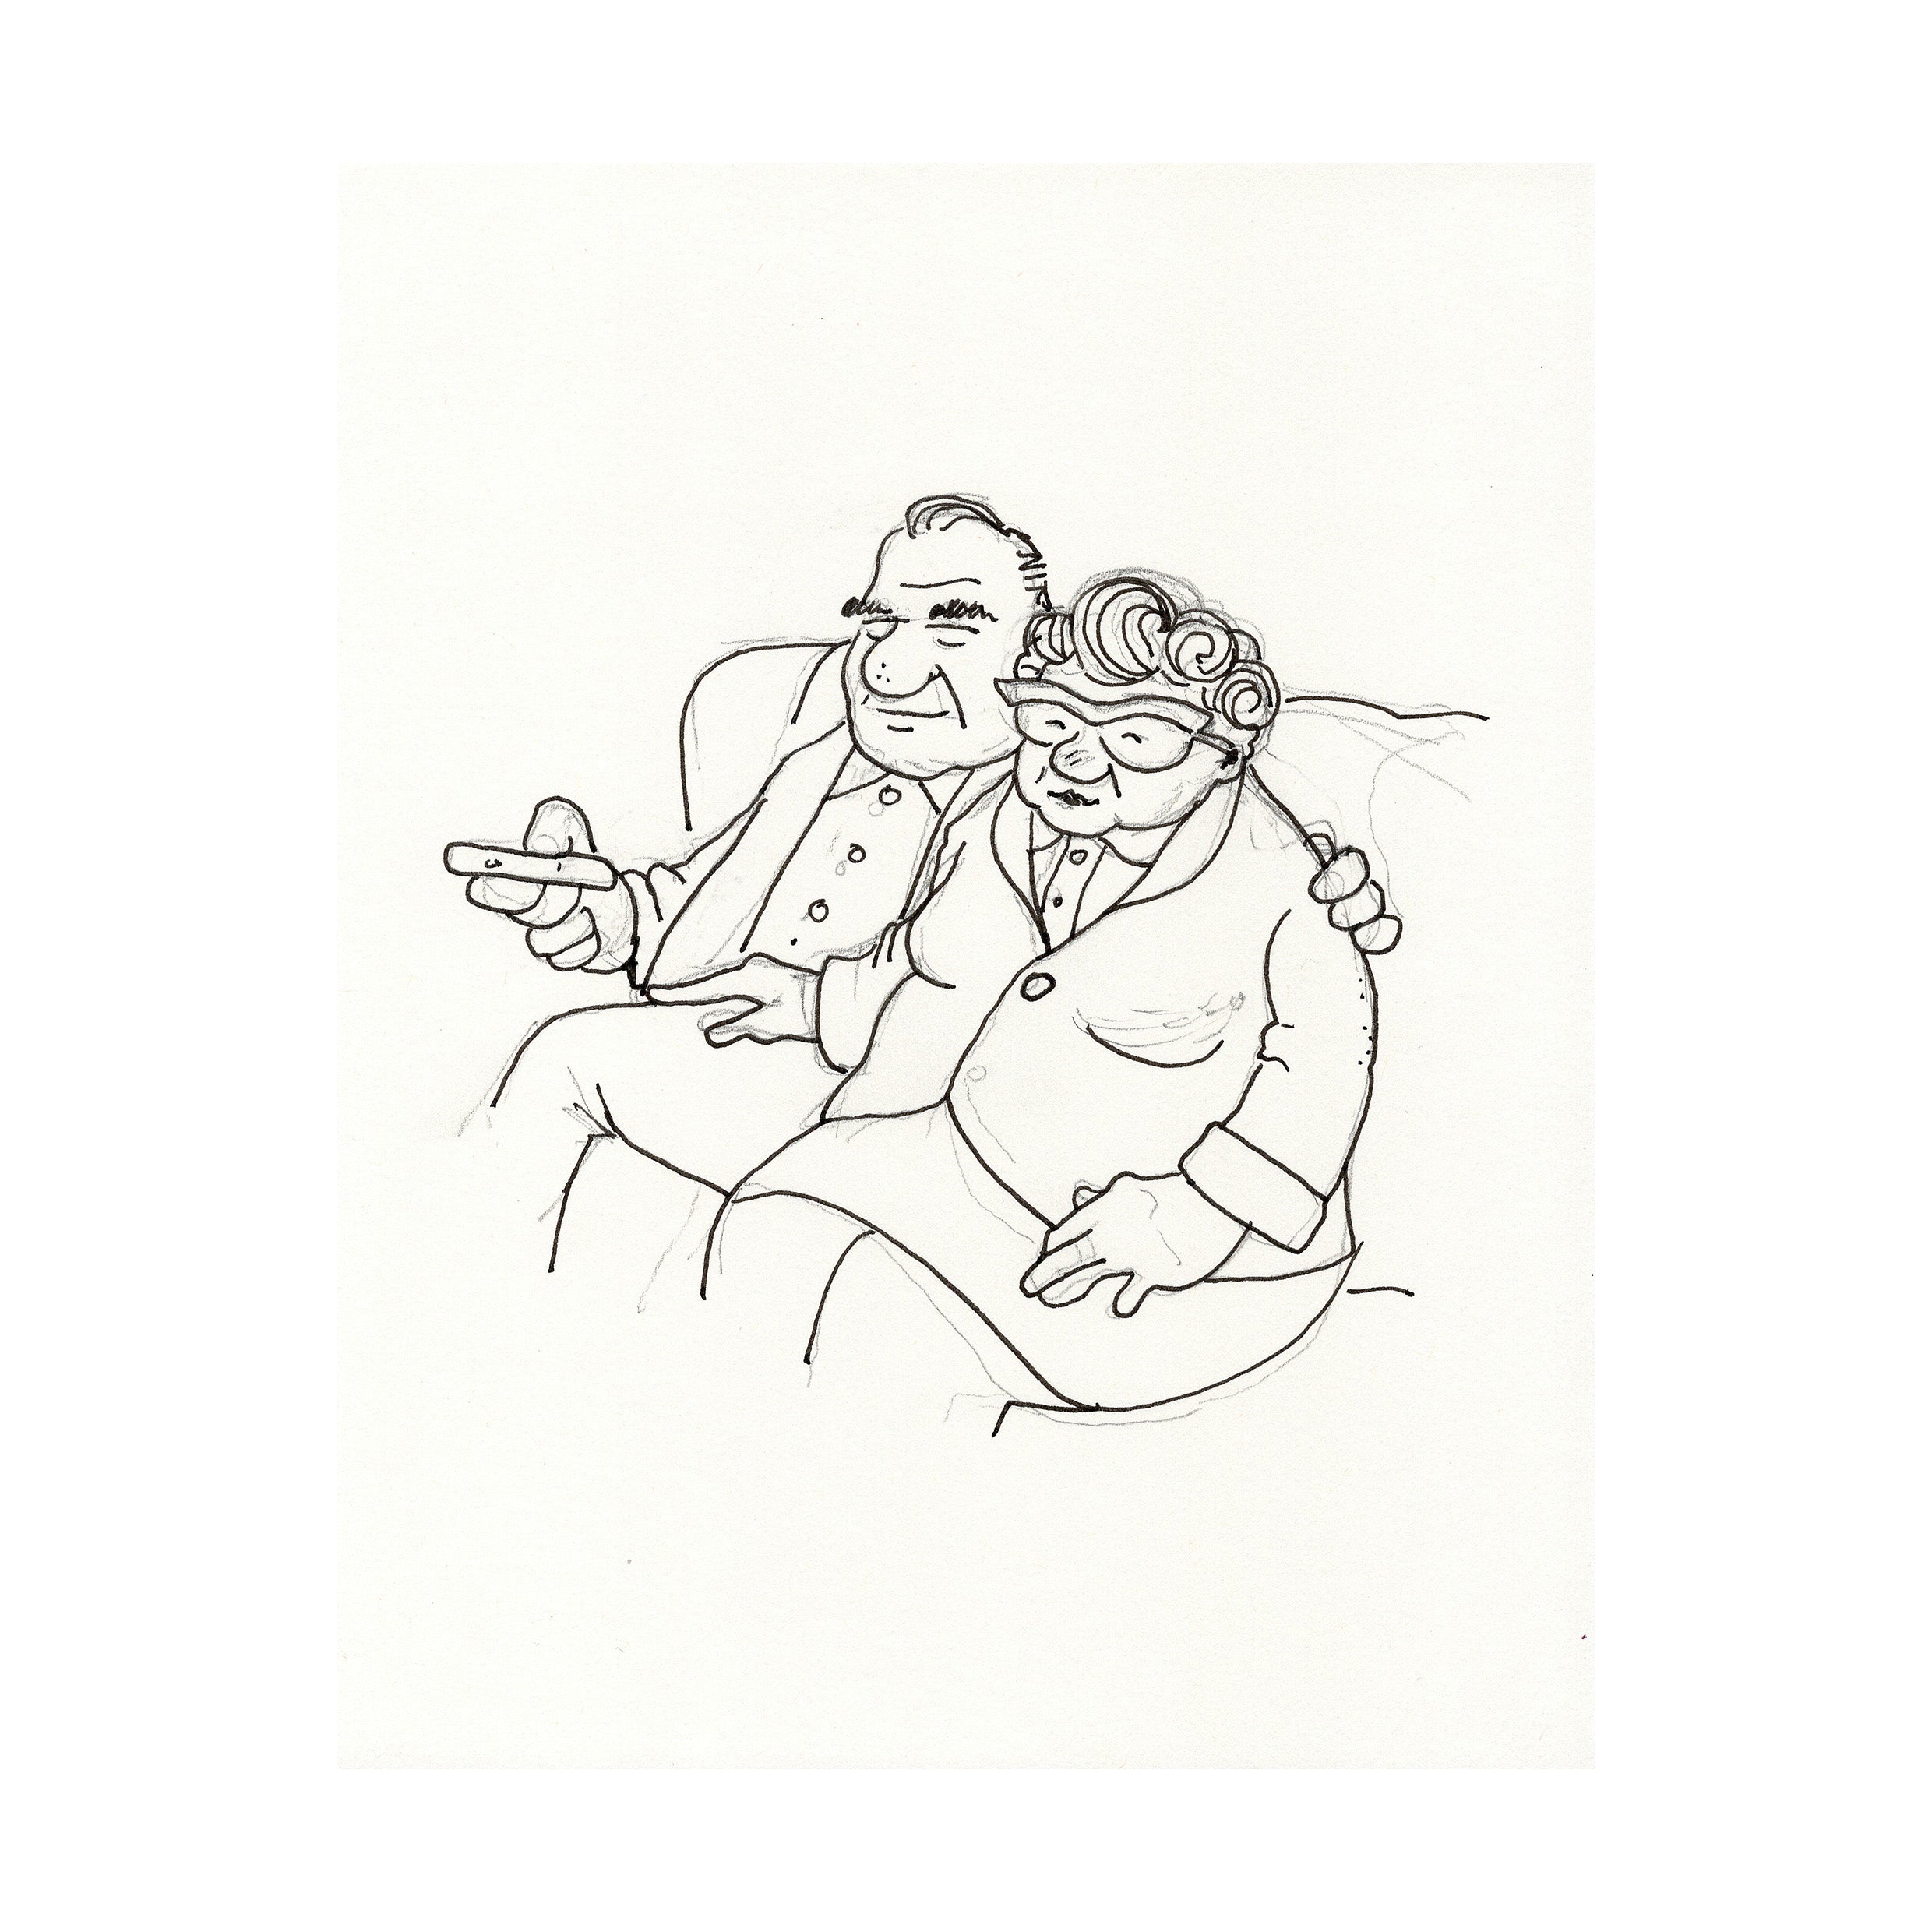 Frank and Joy - Original Sketch